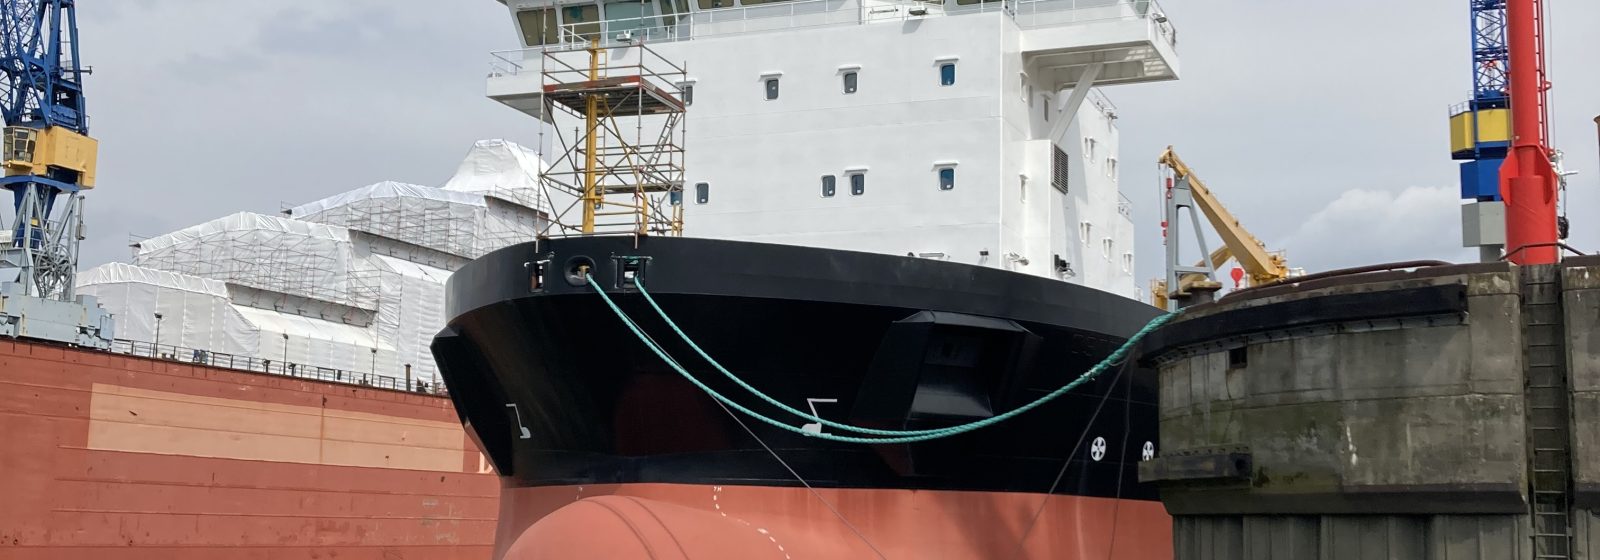 Een schip ligt aangemeerd voor herstelling in de haven van Hamburg